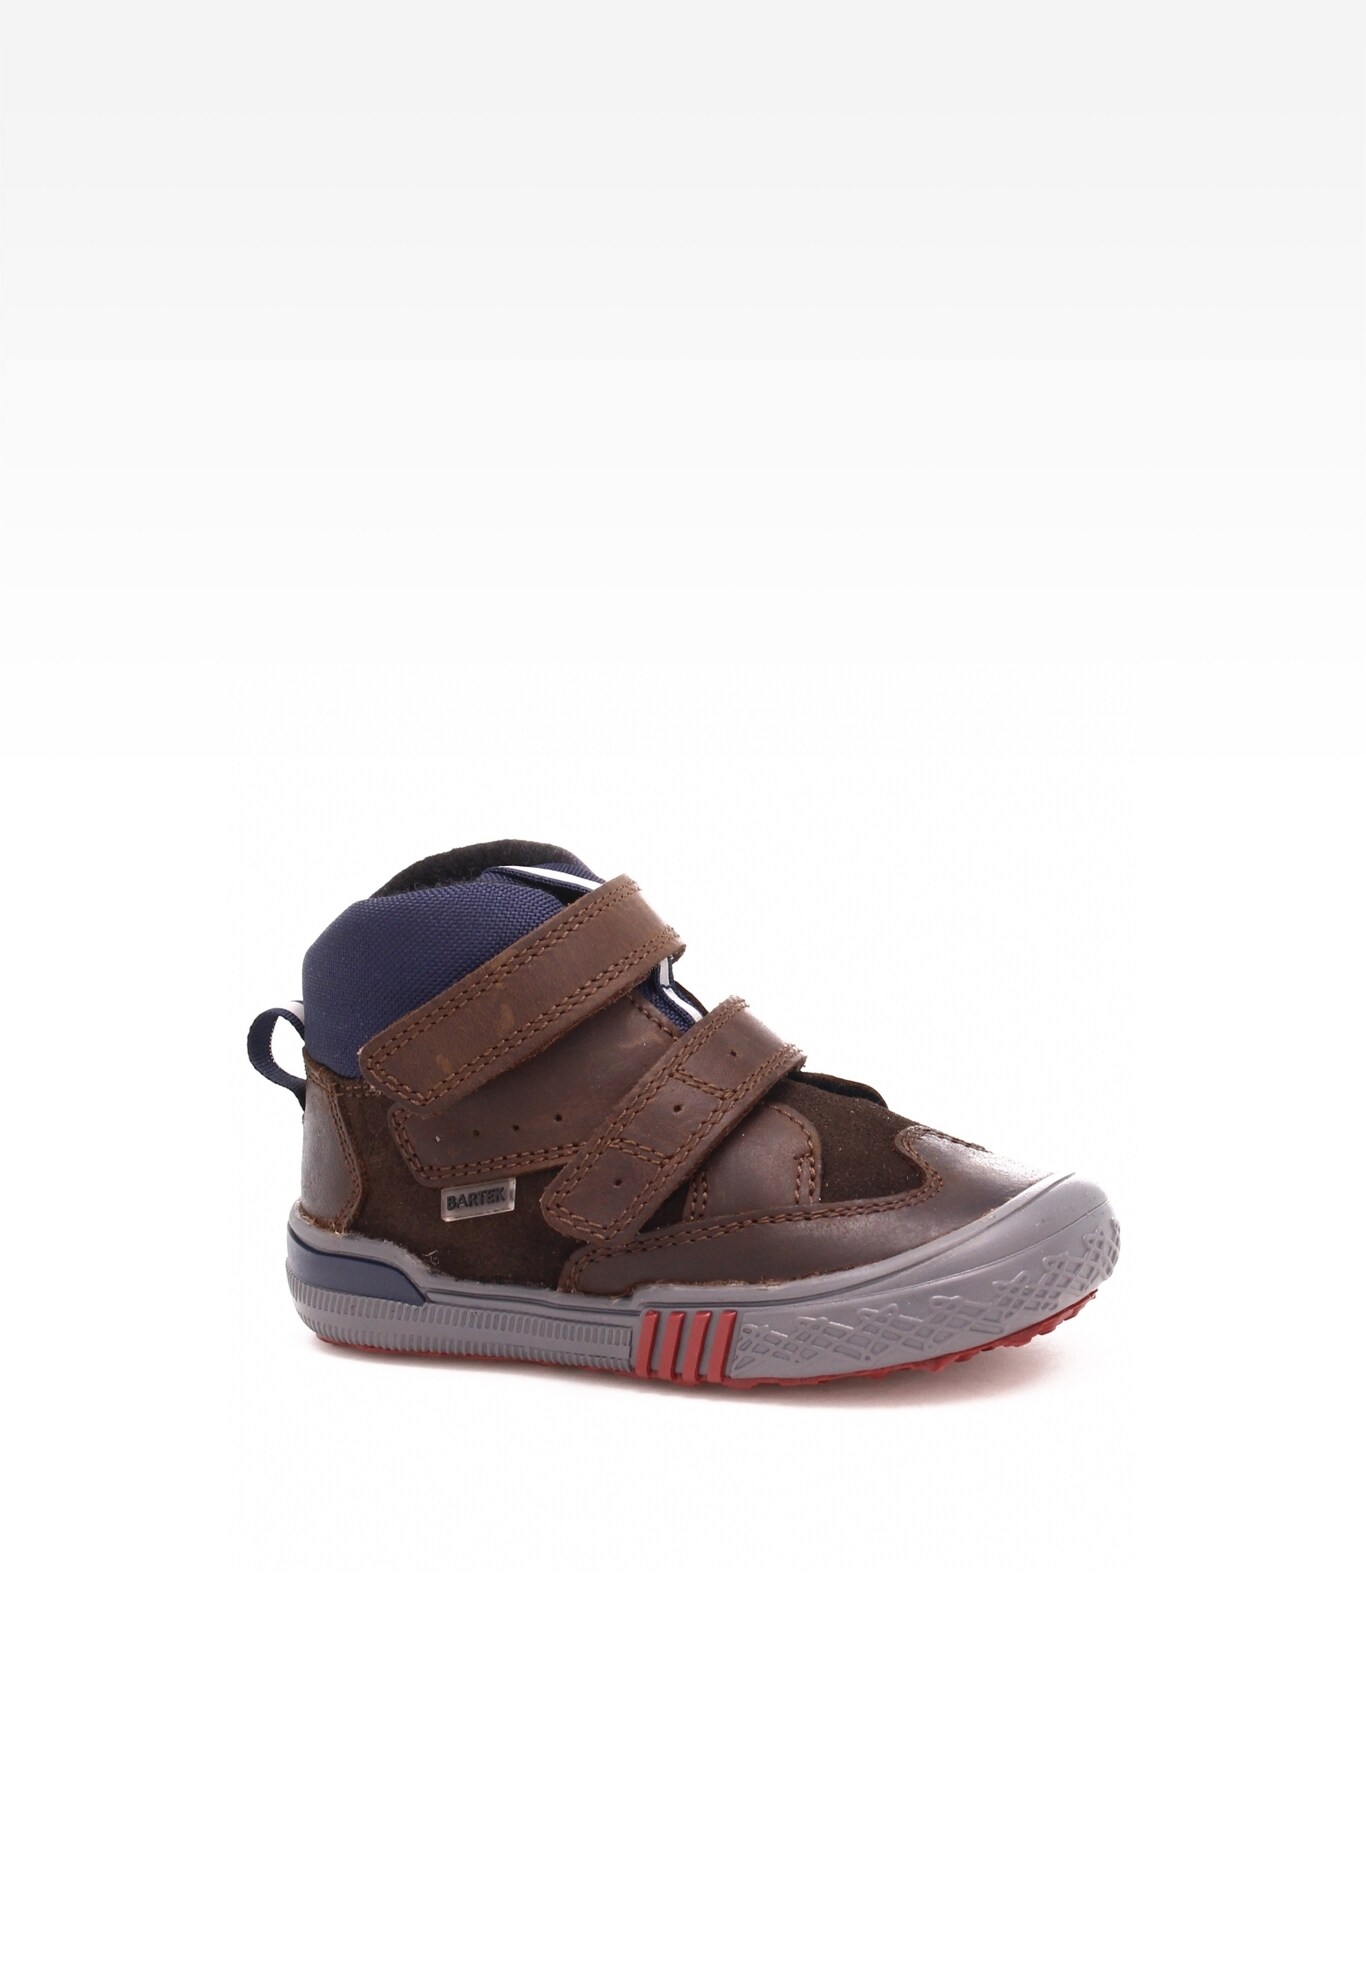 Sneakers BARTEK 021704/0P-RRA II, dla chłopców, brązowy